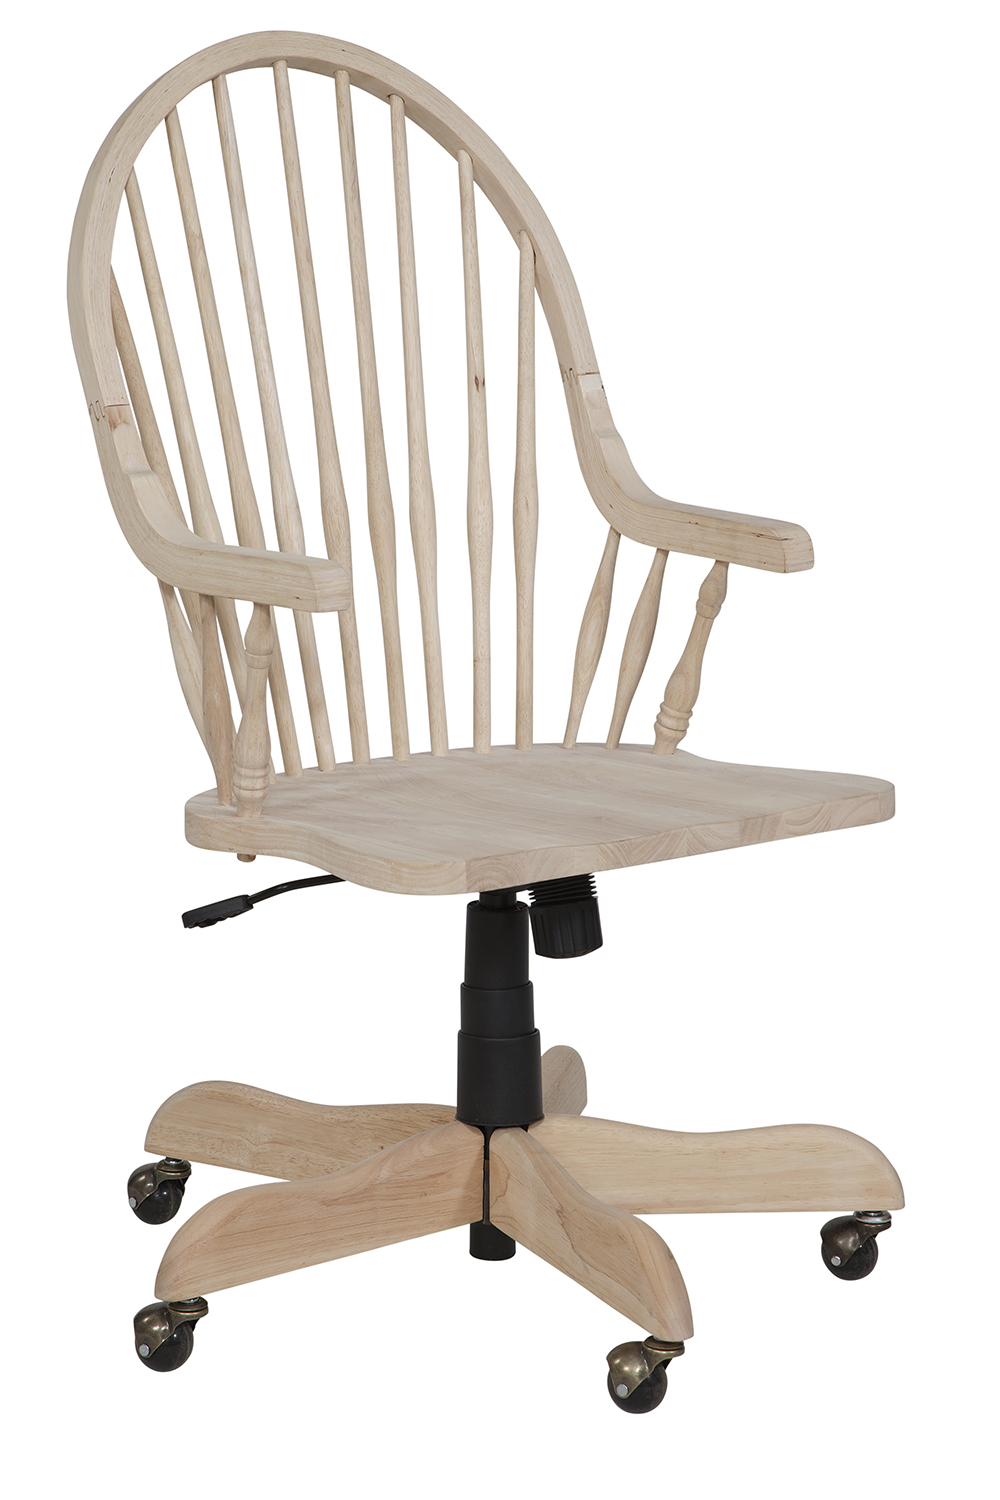 Tall Windsor Arm Desk Chair